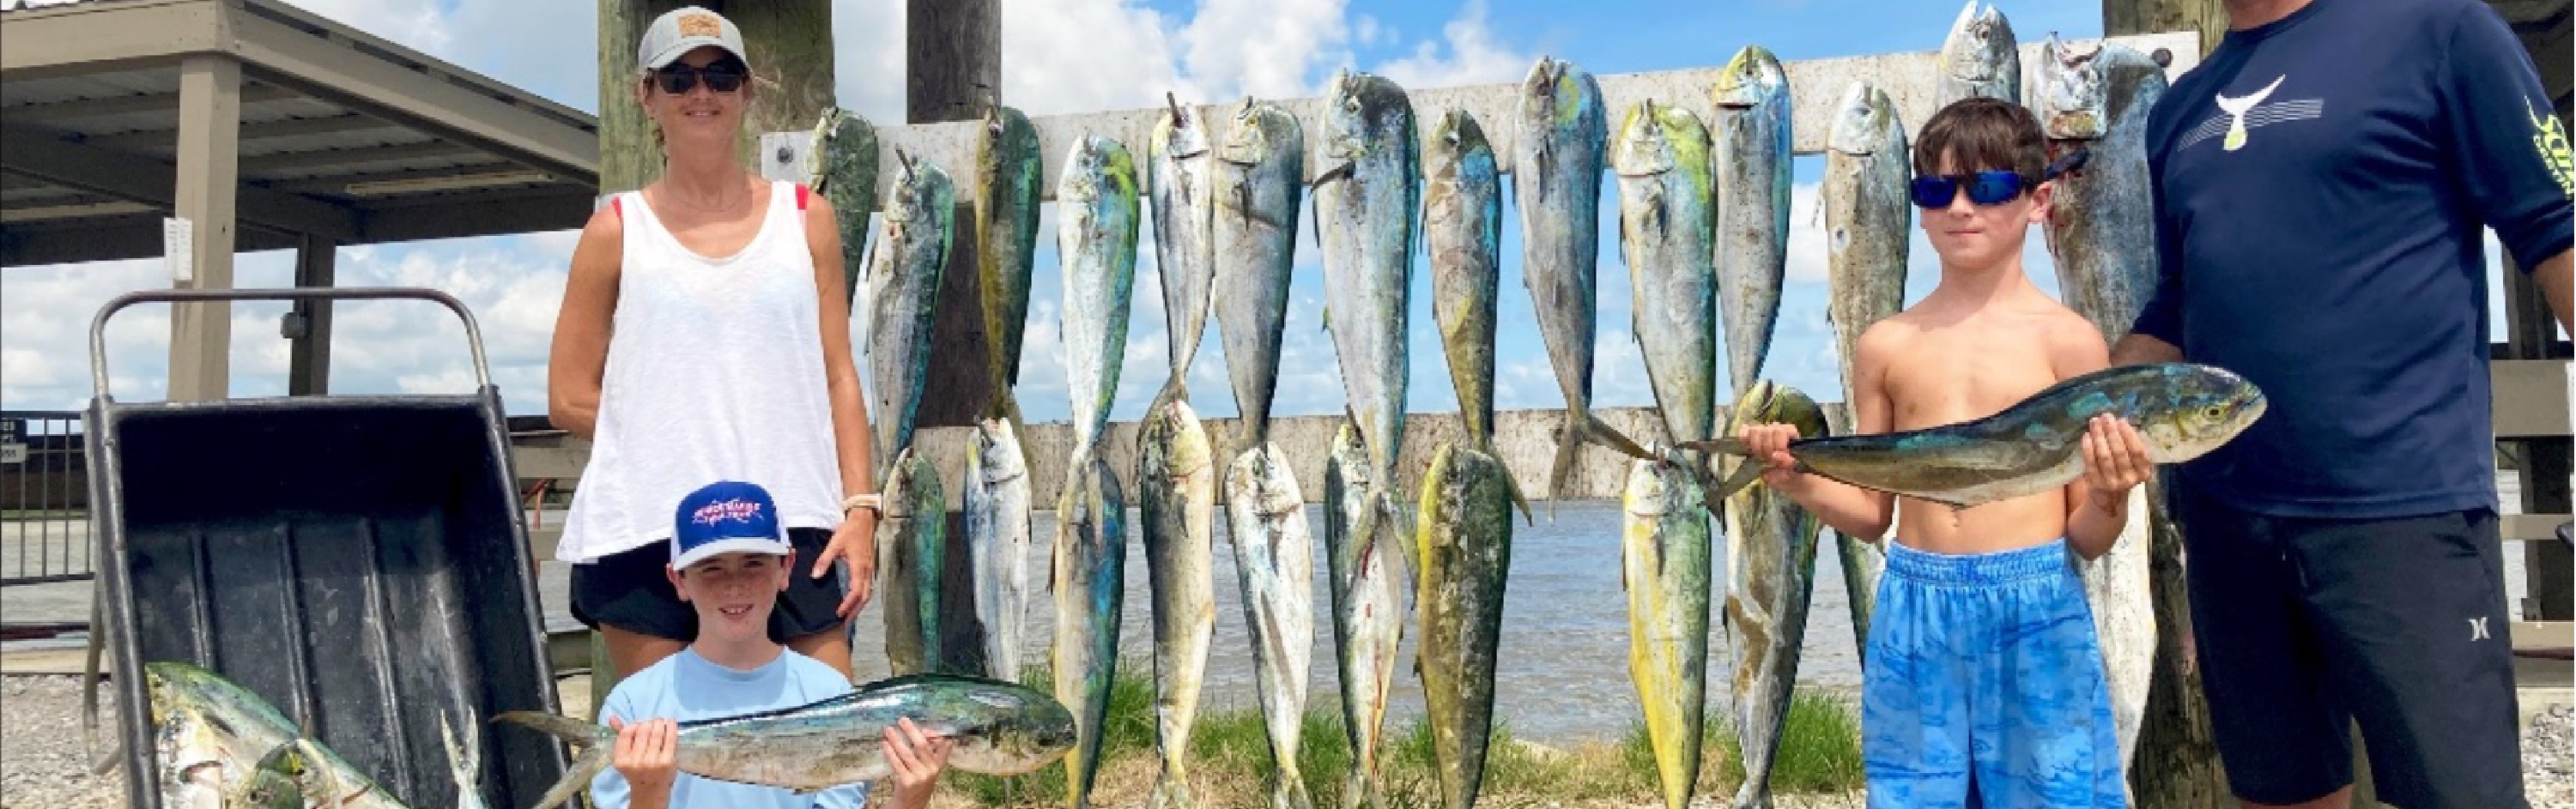 Mahi-Mahi fishing charters in Venice, Louisiana